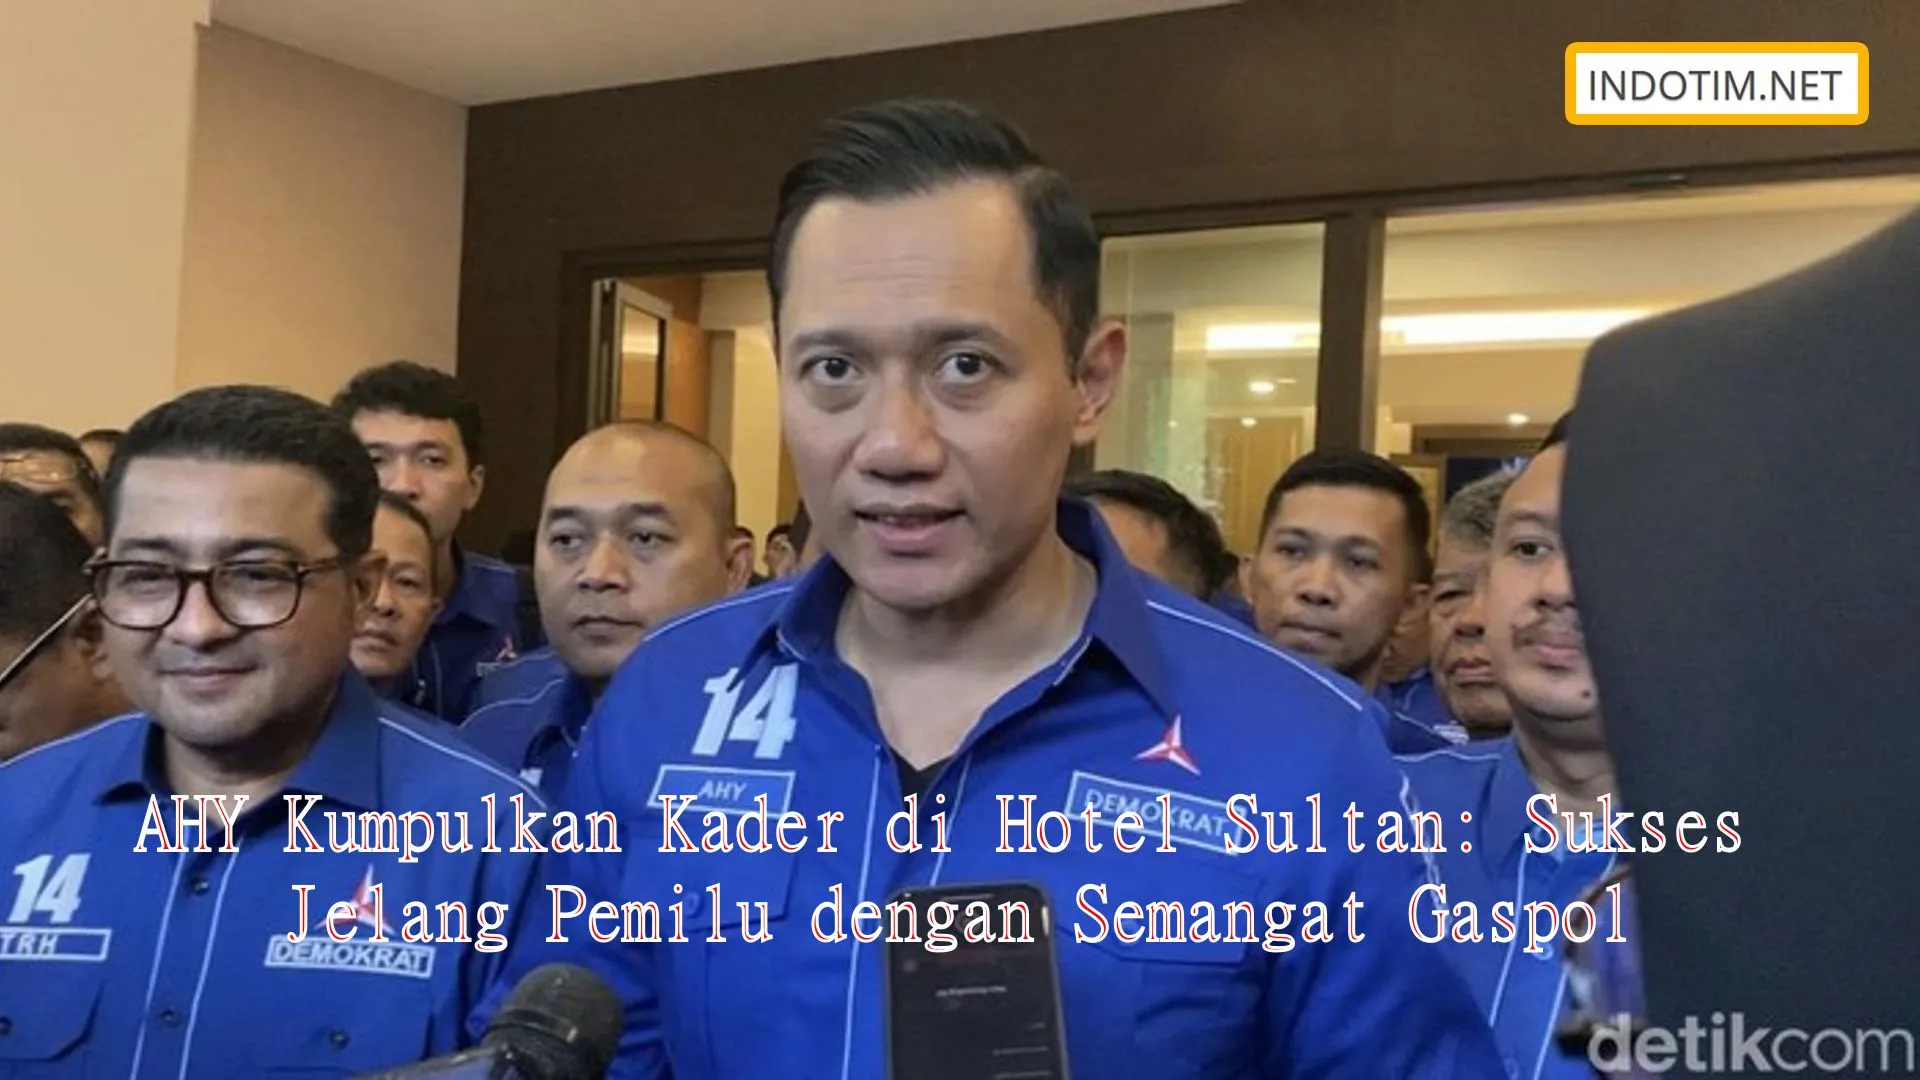 AHY Kumpulkan Kader di Hotel Sultan: Sukses Jelang Pemilu dengan Semangat Gaspol